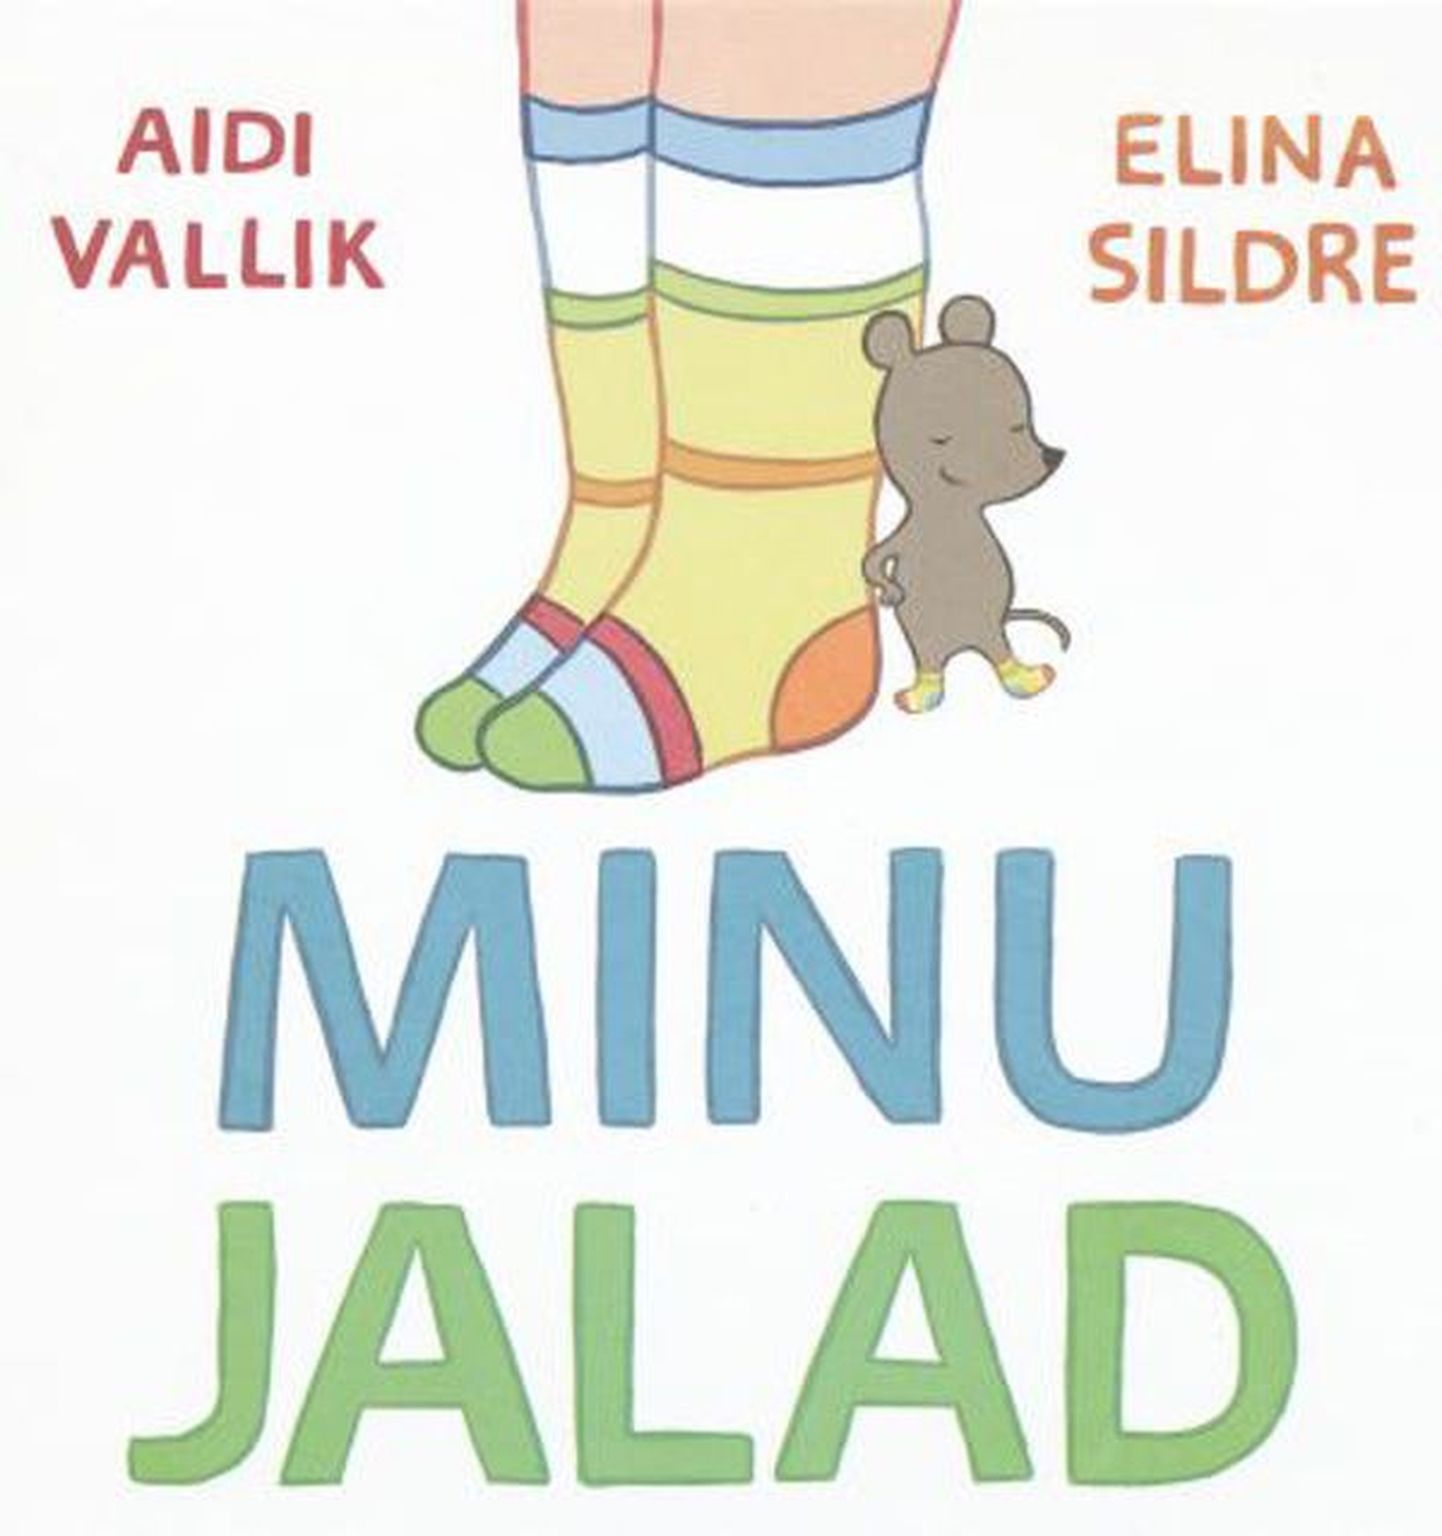 Raamat
Aidi Vallik
«Minu jalad»
pildid joonistas Elina Sildre
Lugu-Loo, 2010